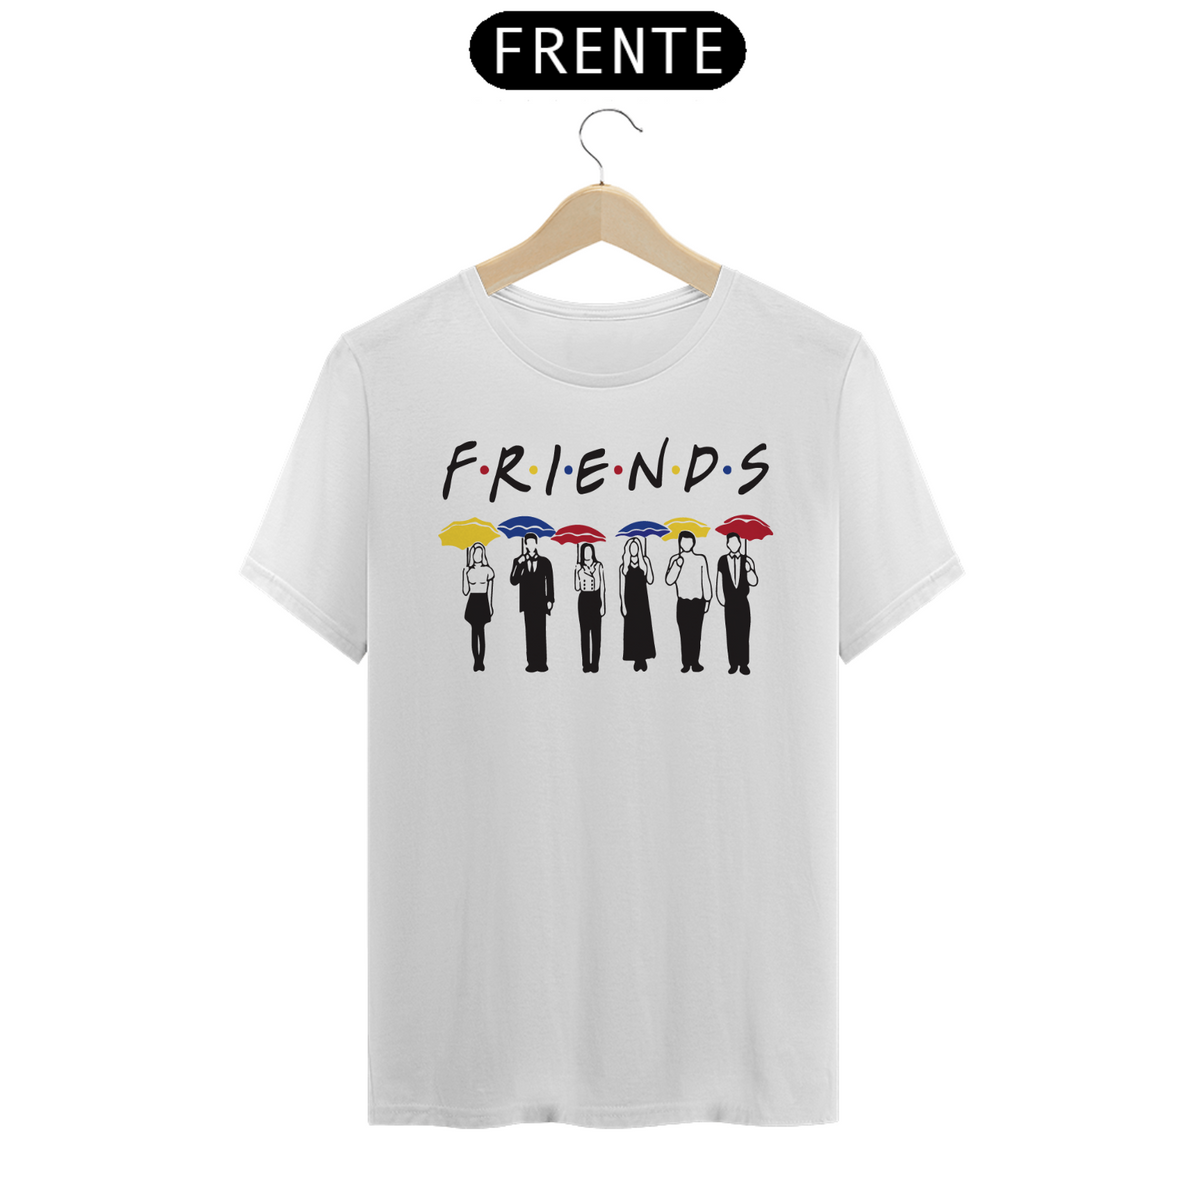 Nome do produto: Friends Abertura (cores claras)